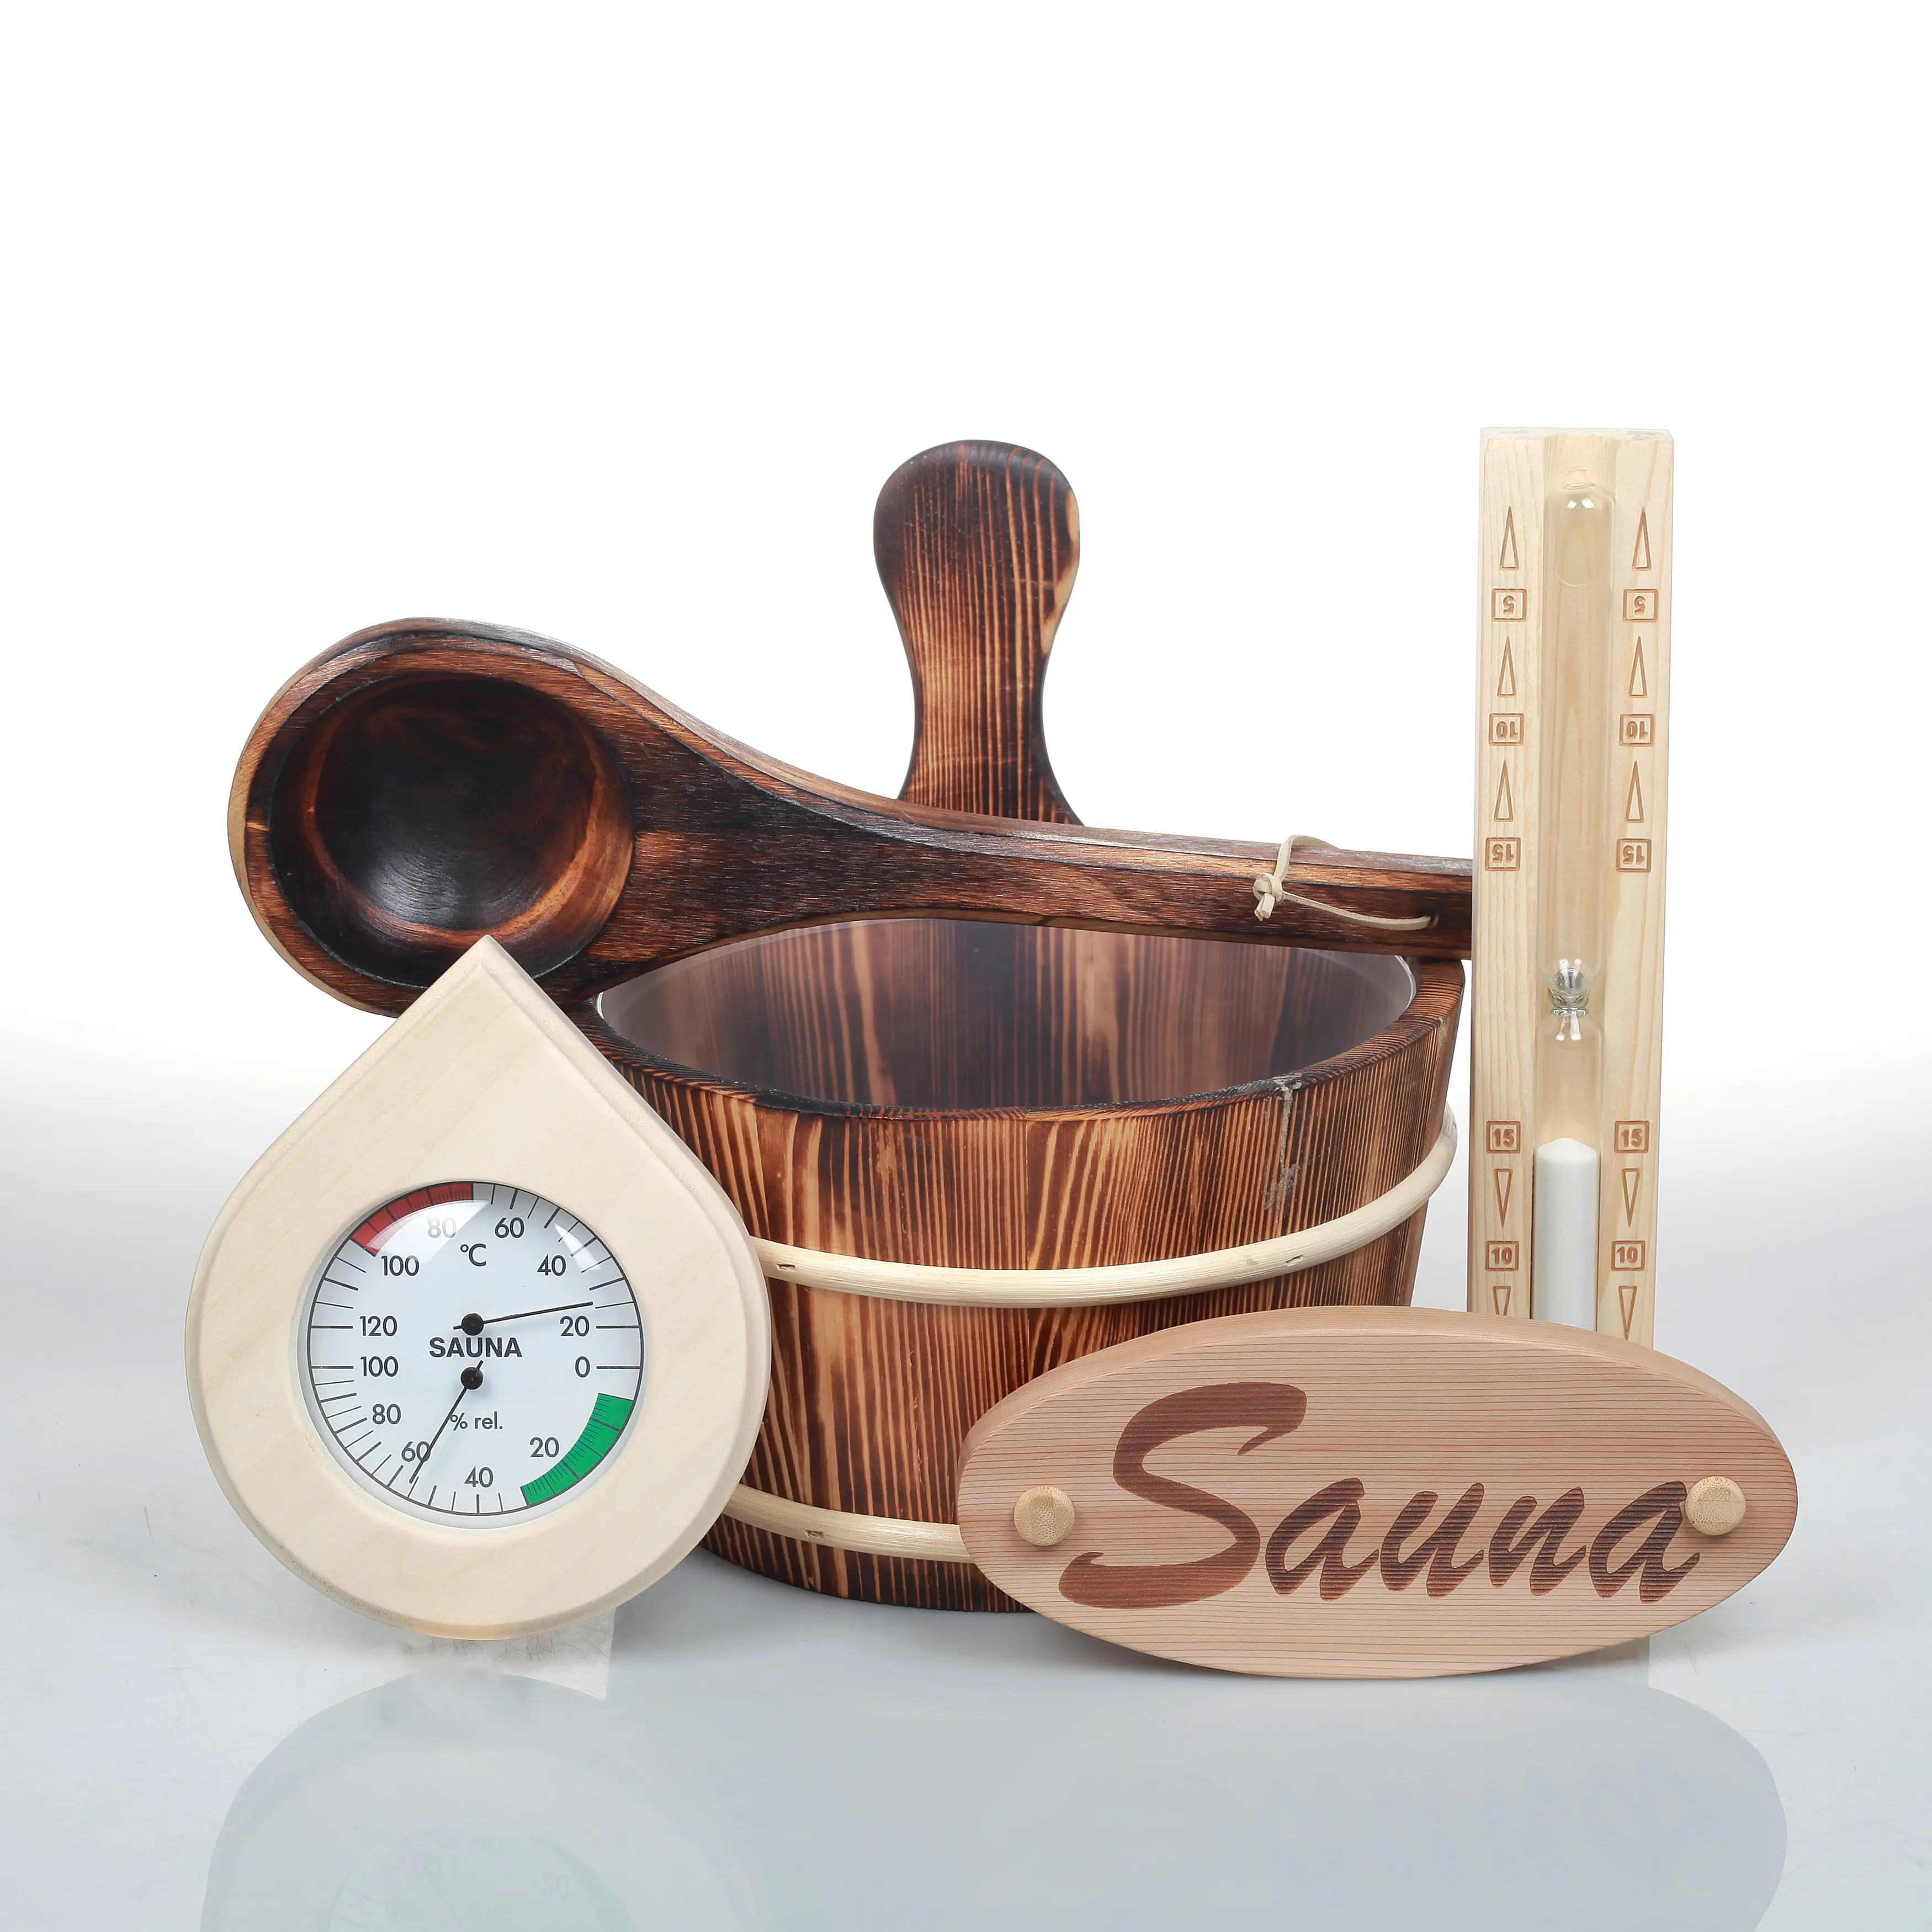 Home sauna accessori set termoigrometro, timer sabbia sauna, secchio sauna in legno e mestolo in vendita